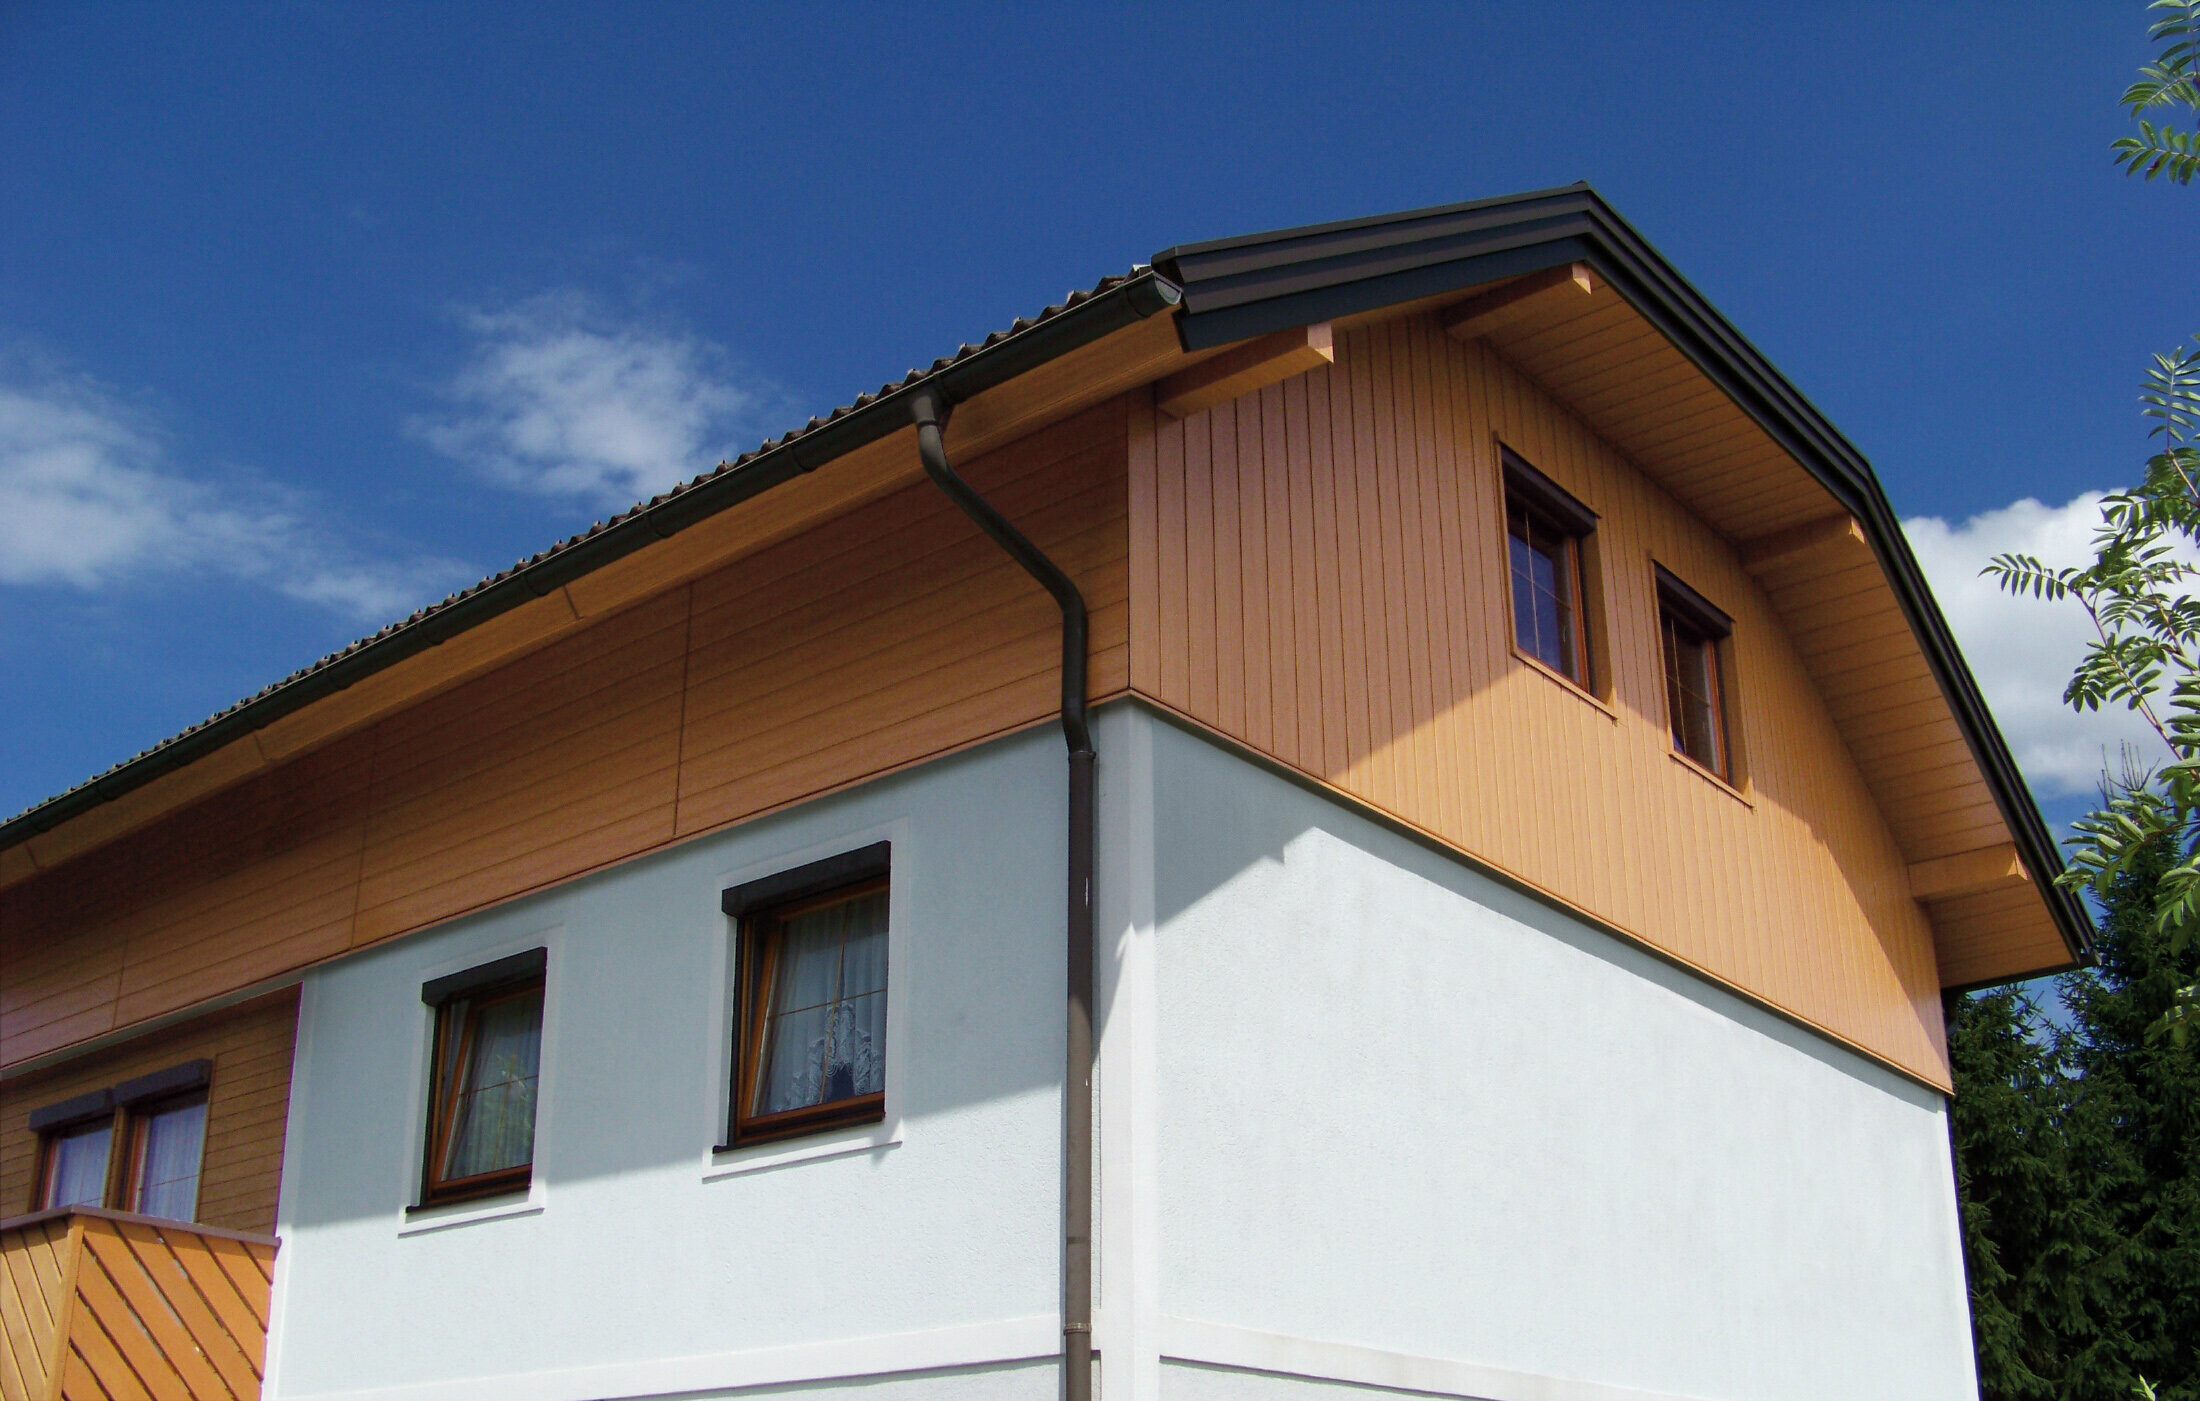 Casa unifamiliare di grandi dimensioni con tetto a due spioventi con falda a timpano e rivestimento del timpano con doghe di rivestimento PREFA con effetto legno chiaro